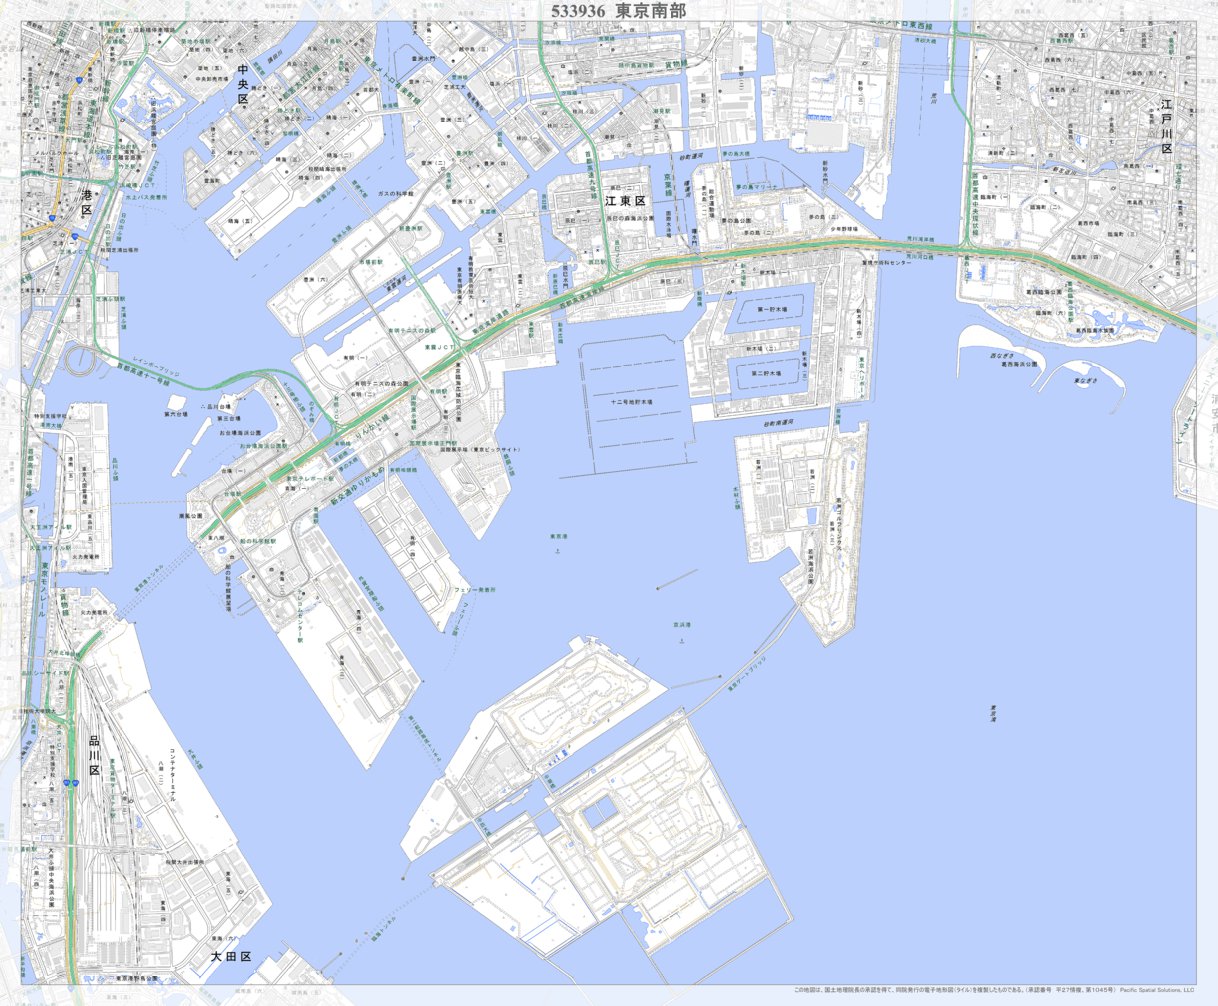 533936 東京南部（とうきょうなんぶ Tokyonambu）, 地形図 Map 